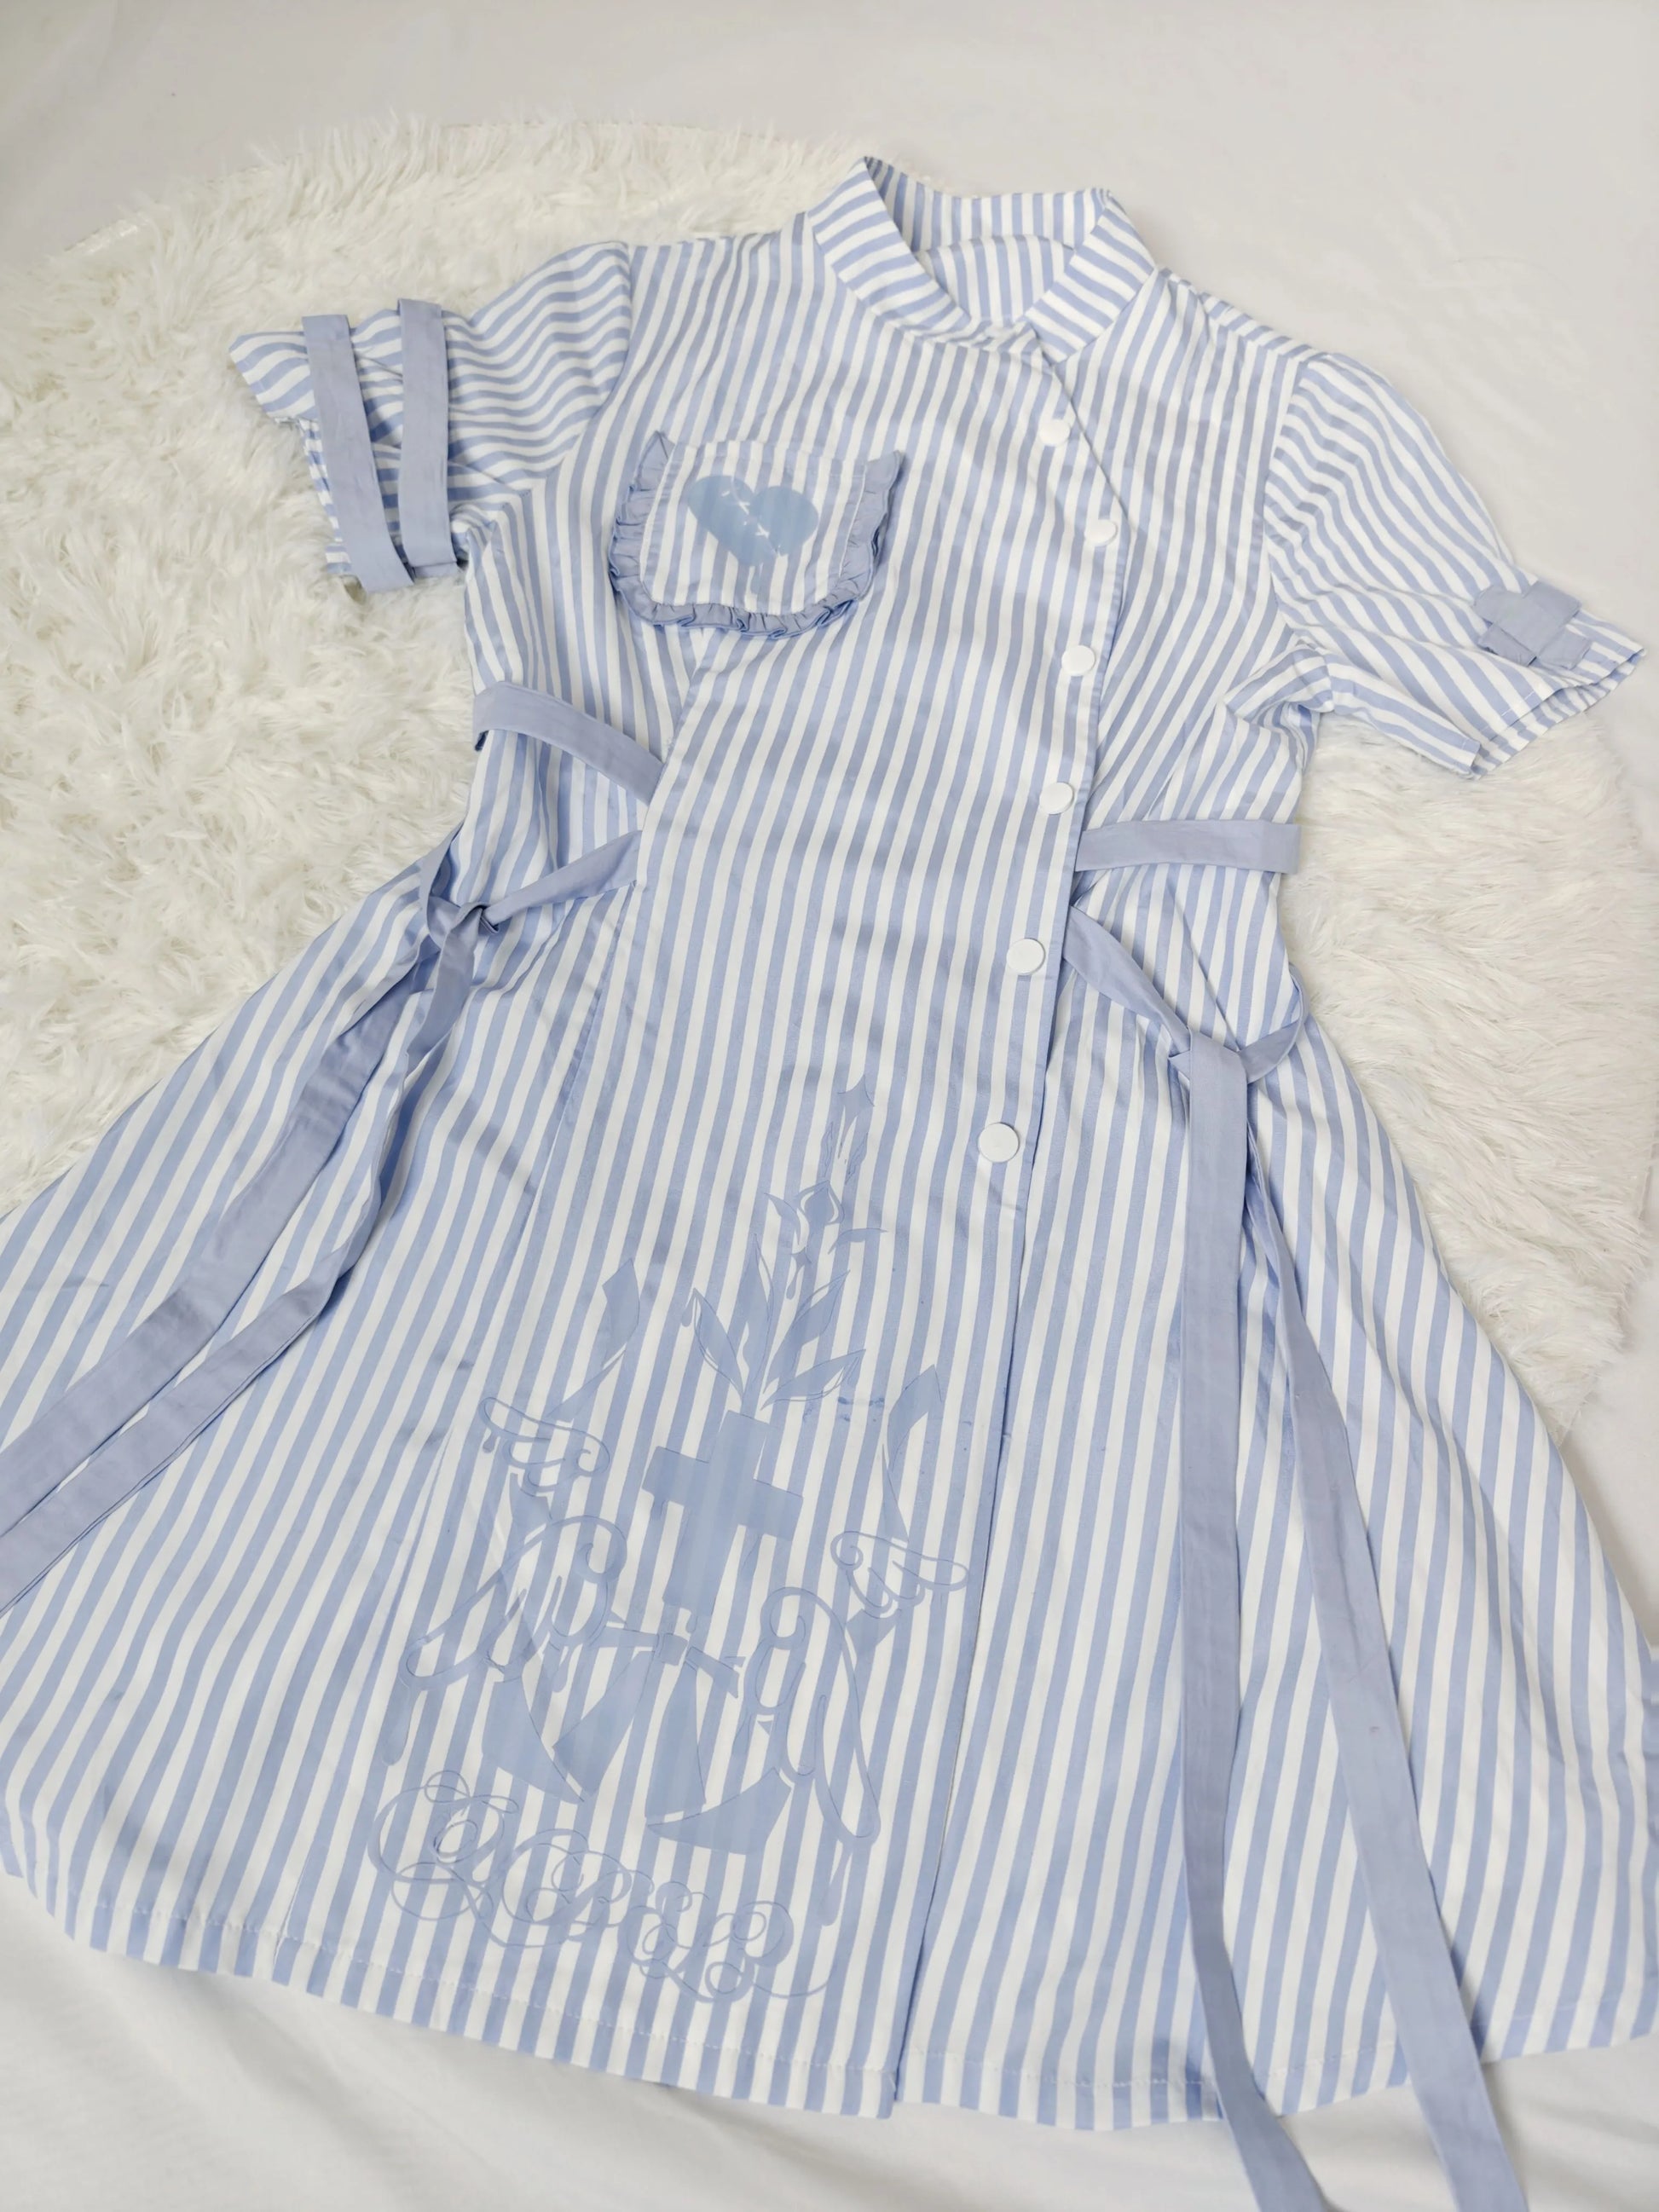 Tenshi Kaiwai Dress Blue Striped Dress Nurse Dress (L M S) 37860:570970